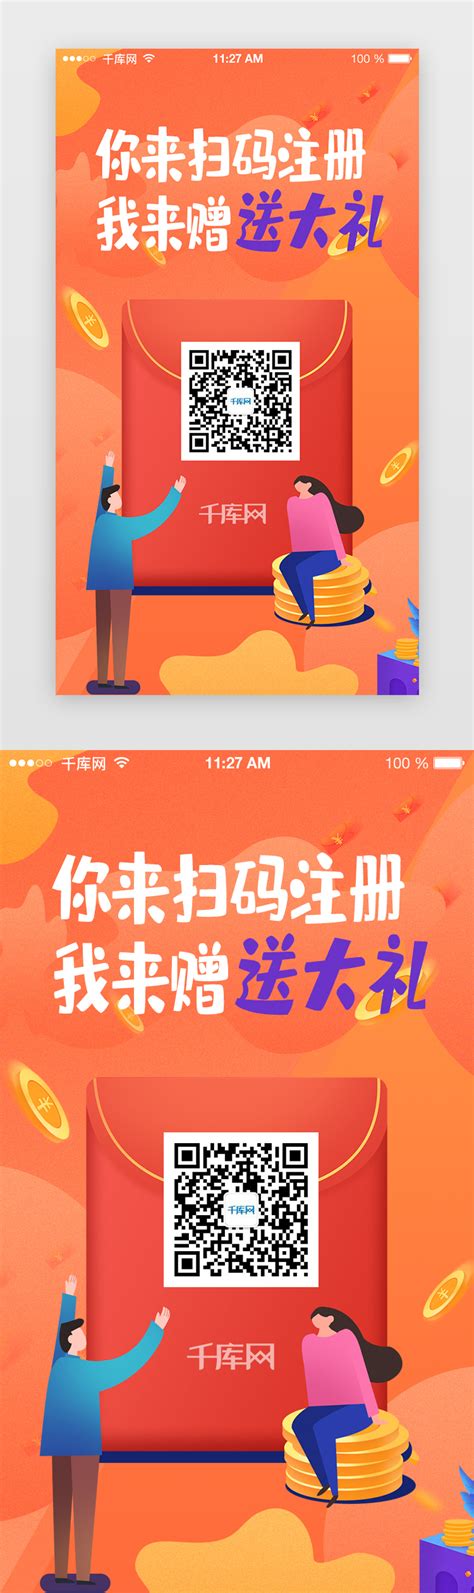 电商淘宝首页banner设计欣赏 - - 大美工dameigong.cn